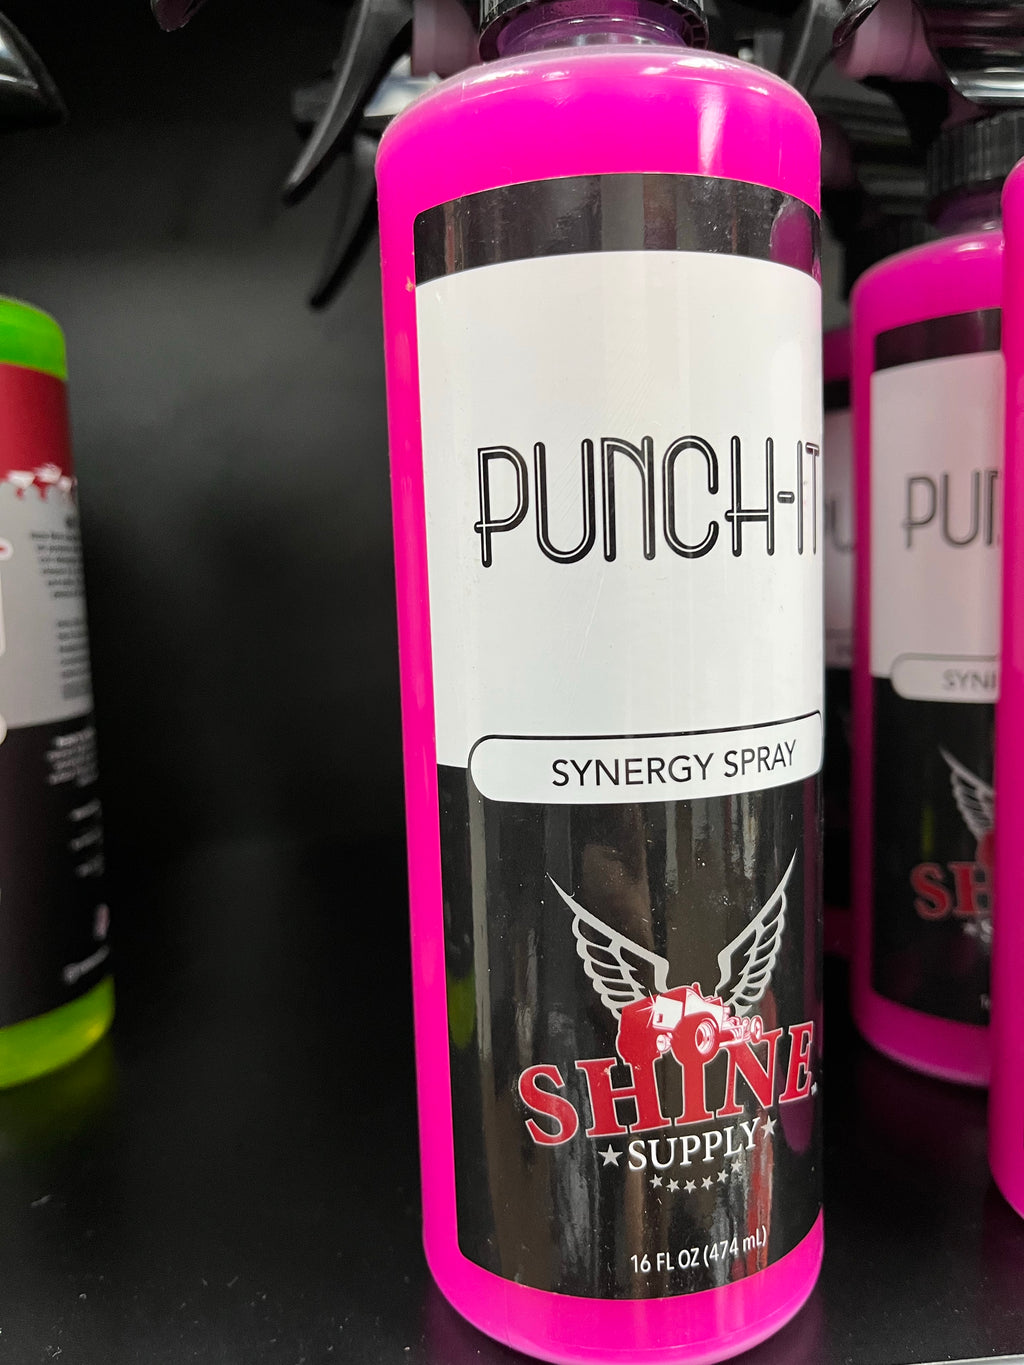 Punch it